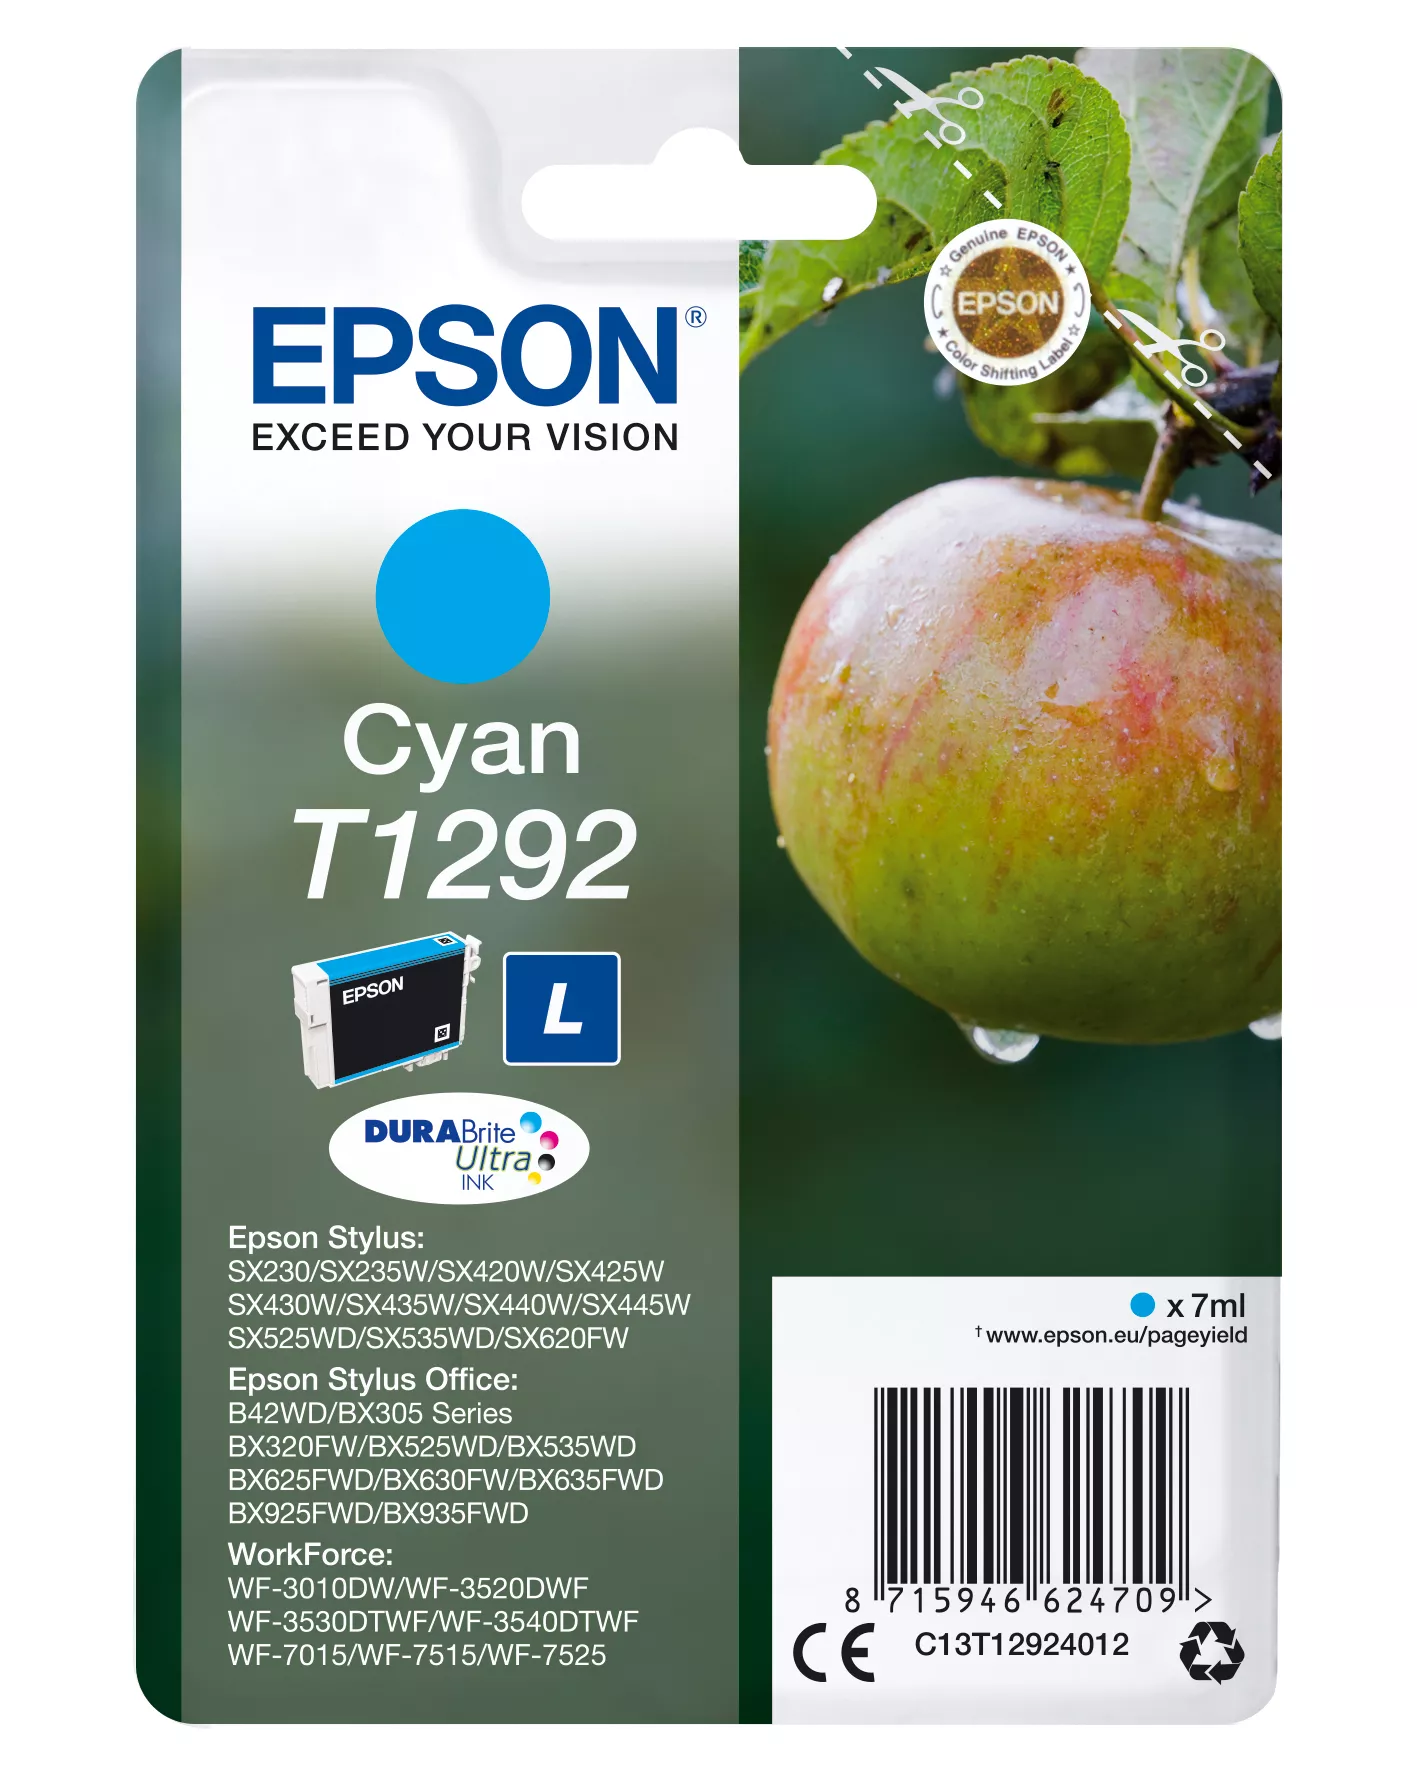 Vente EPSON T1292 cartouche d encre cyan haute capacité 7ml 1 au meilleur prix